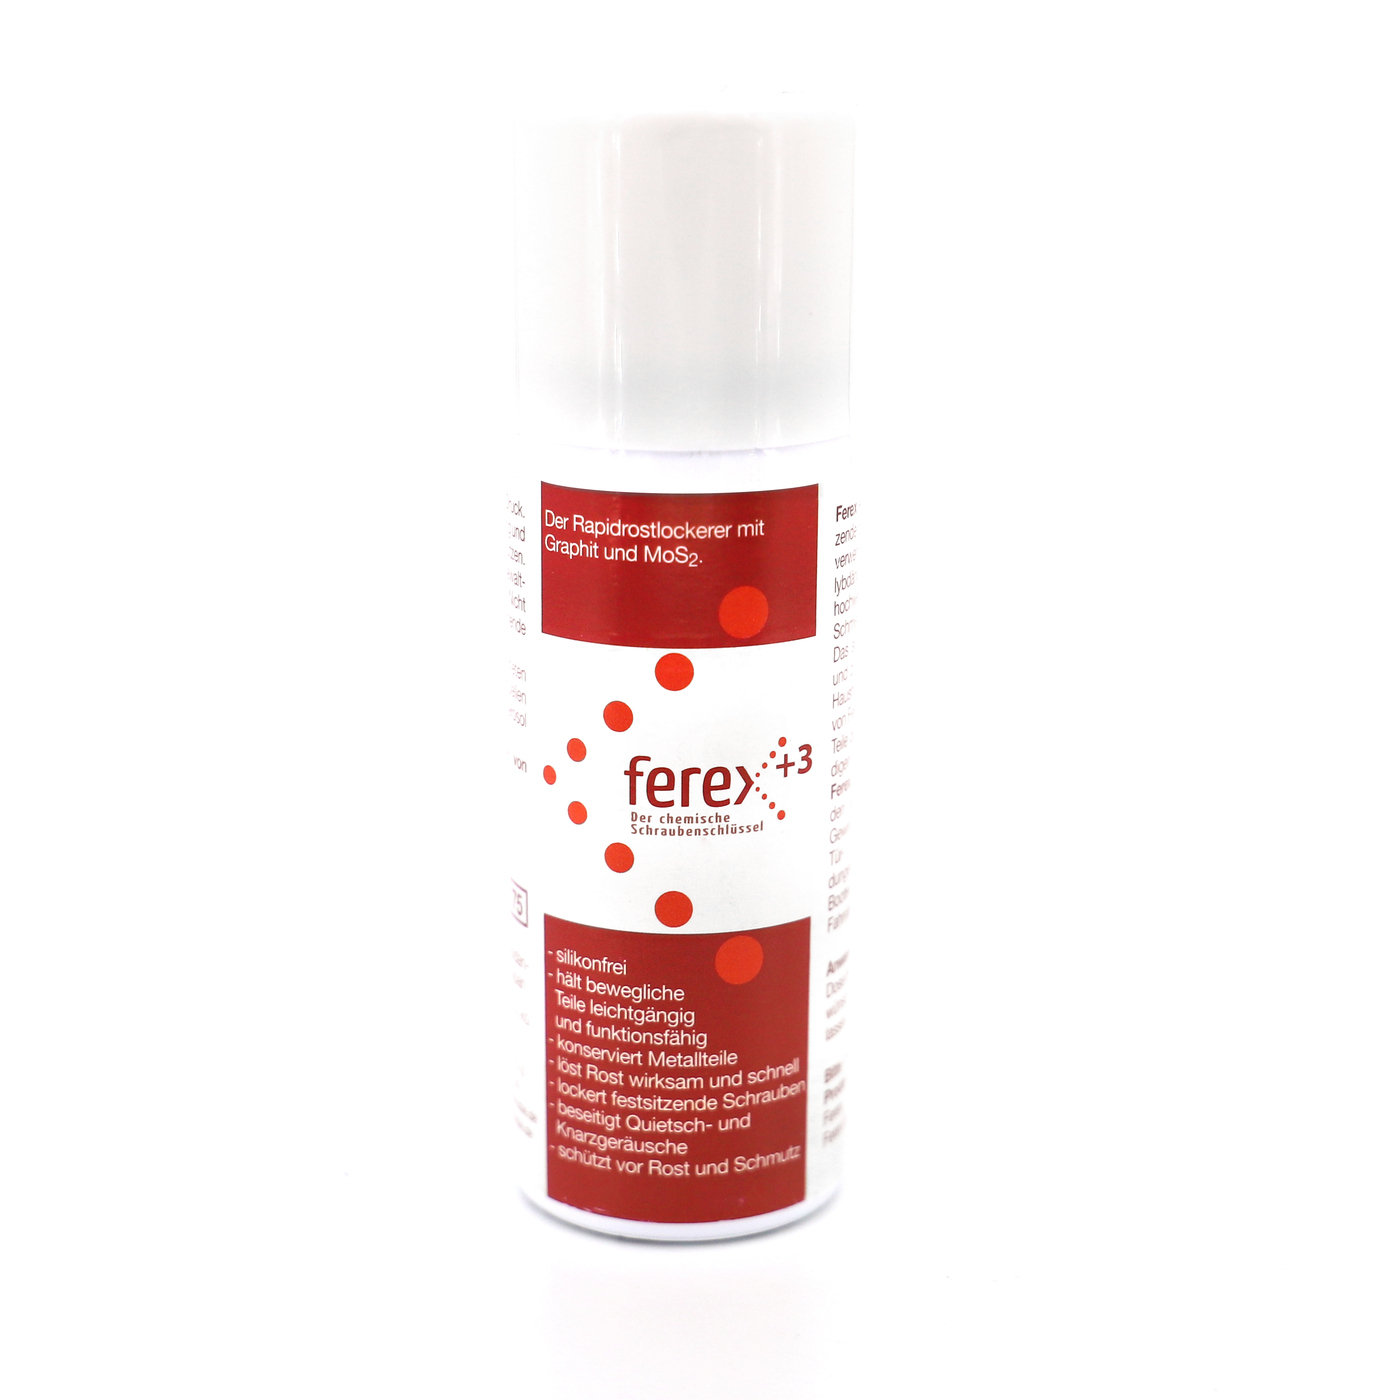 FEREX +3 Der chemische Schraubenschlüssel Rapidrostlockerer mit Graphit und MoS₂ 50 ml in Spraydose